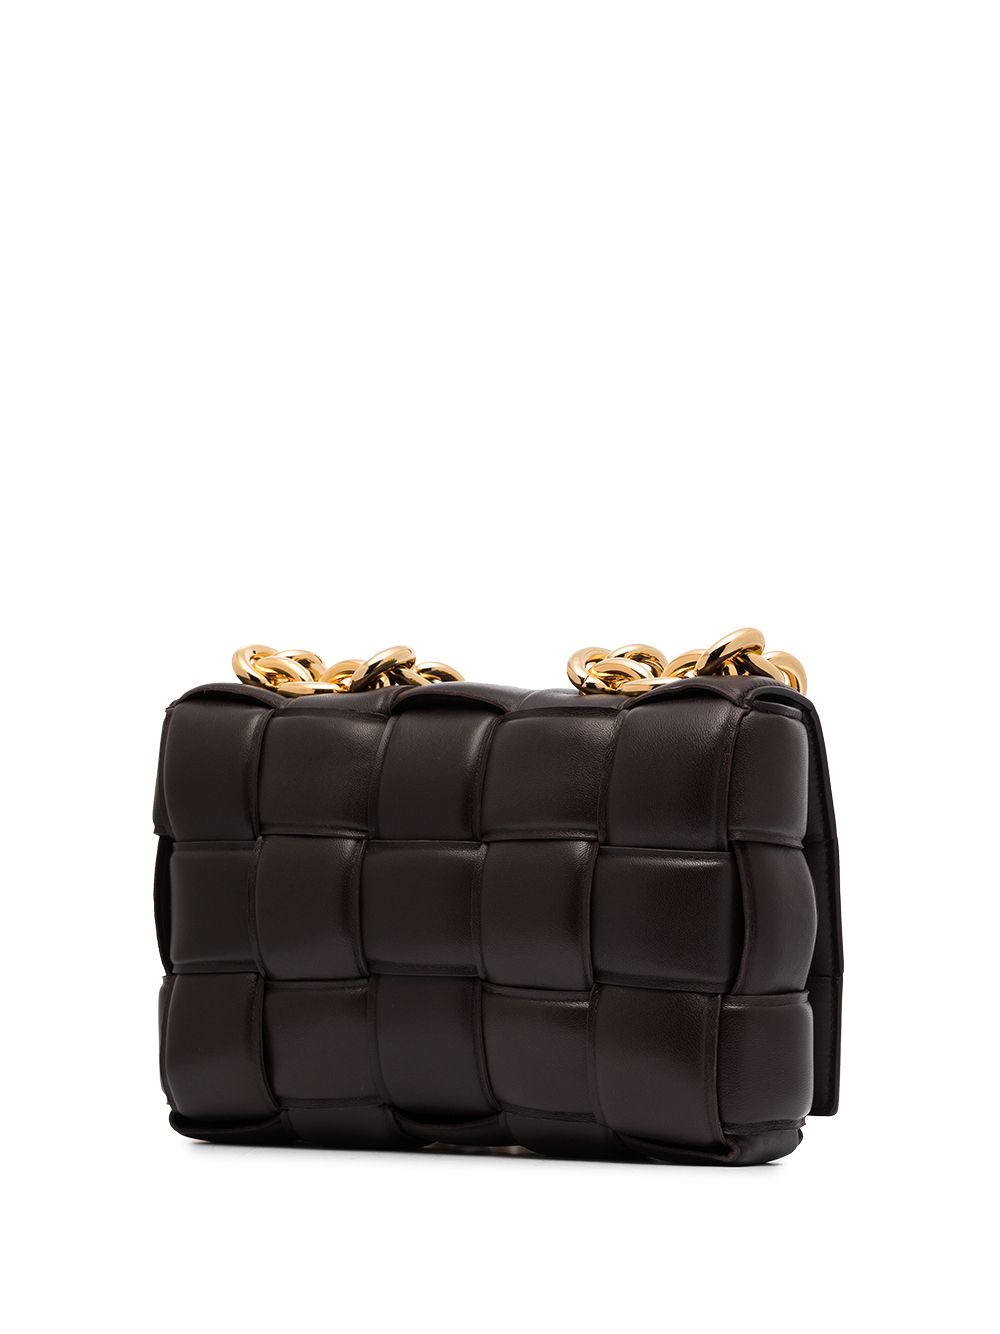 фото Bottega veneta дутая сумка на плечо casette с ремнем-цепочкой